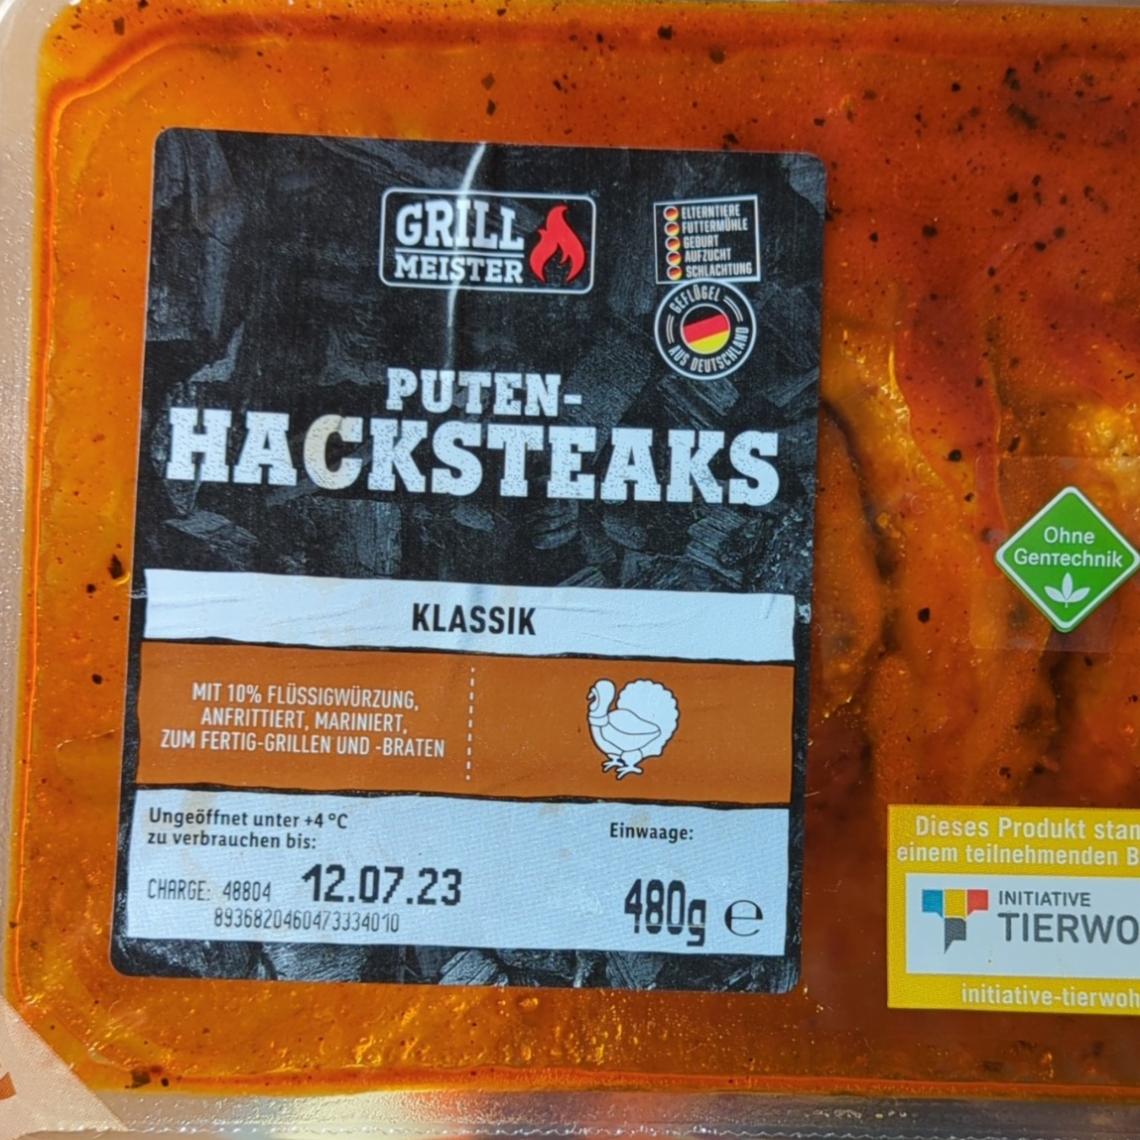 Puten-Hacksteaks Klassik Grill nutriční kJ Meister - hodnoty a kalorie